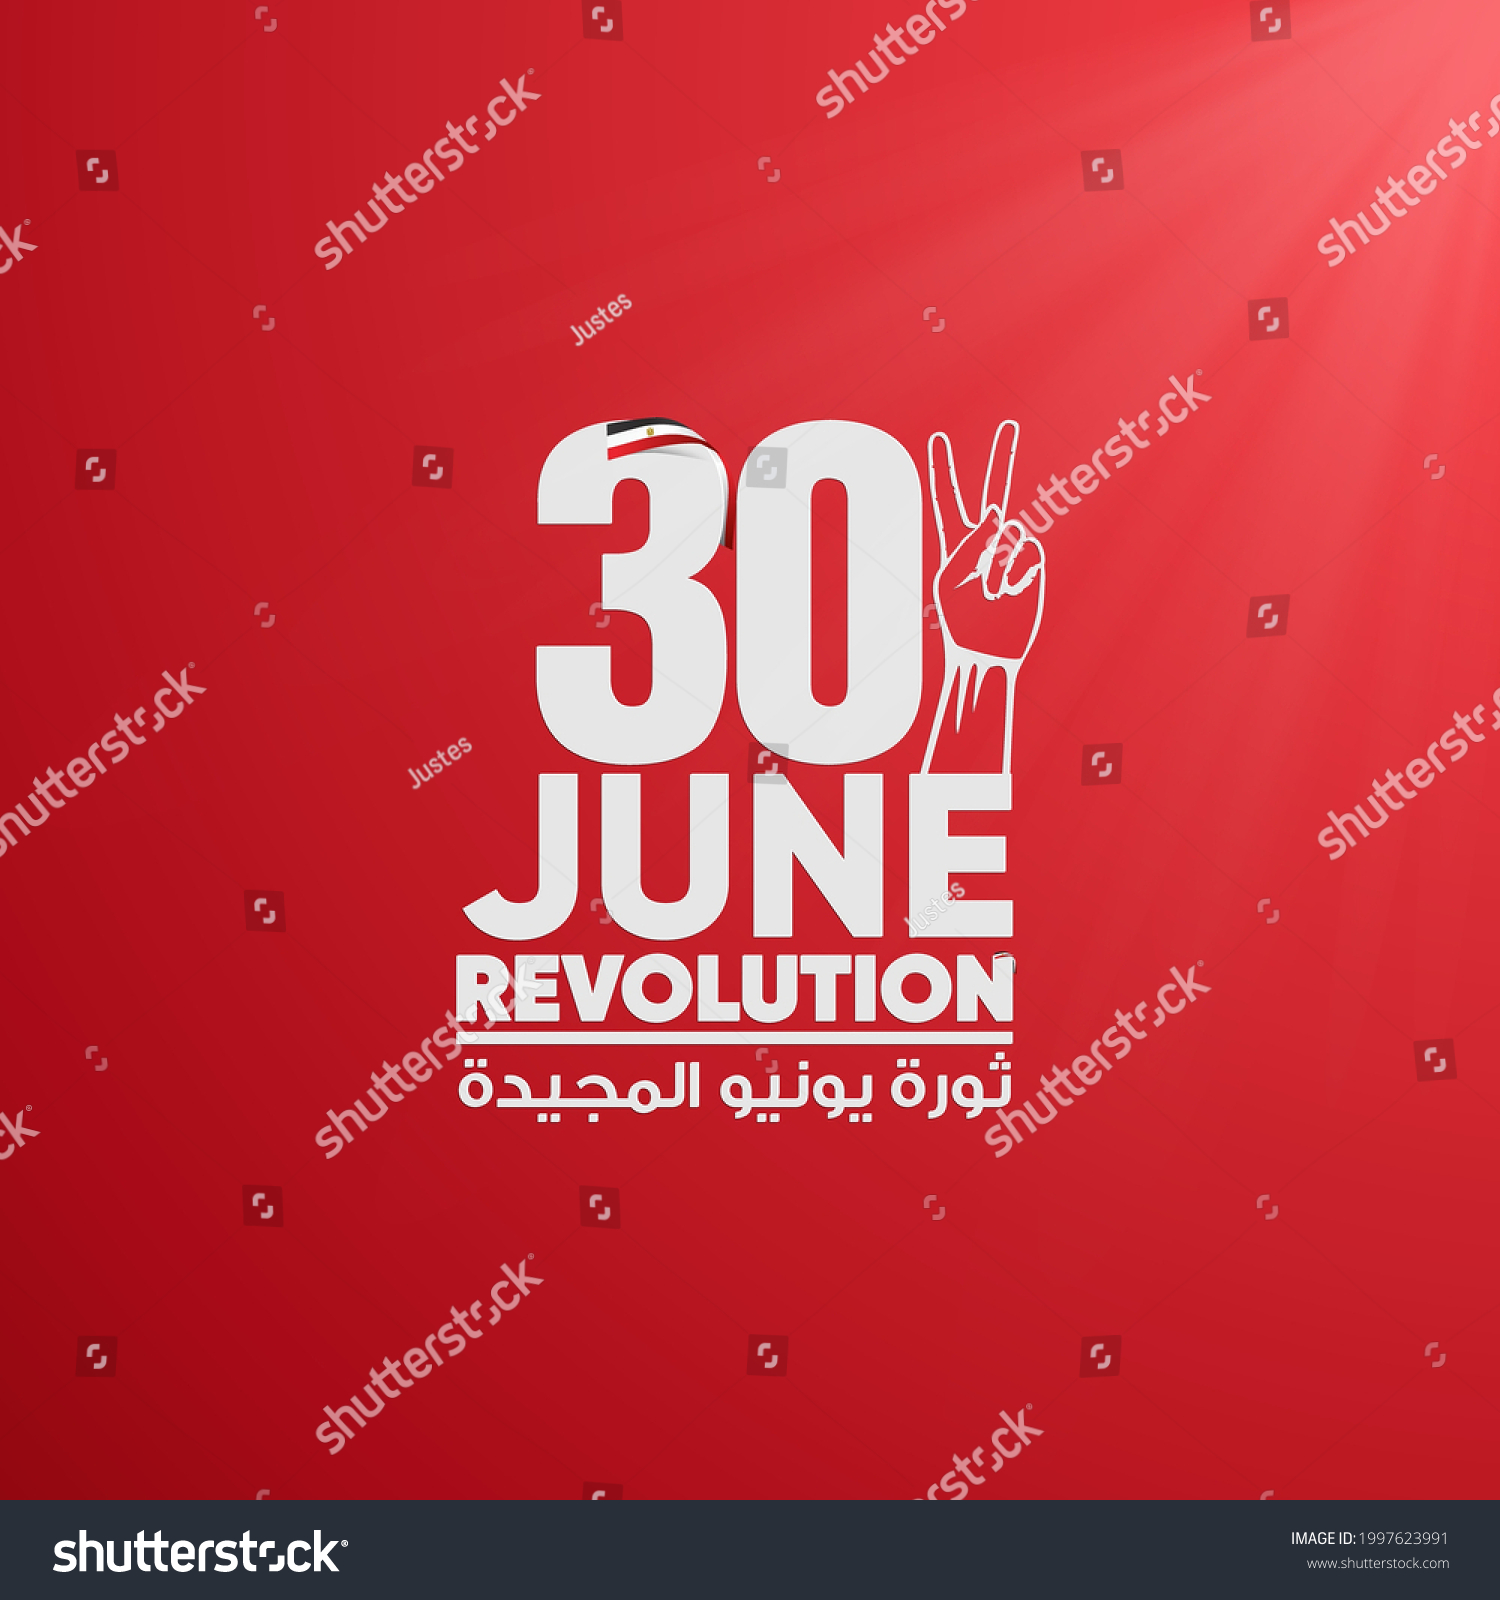 June 30 Egyptian Revolution Design on red background #1997623991